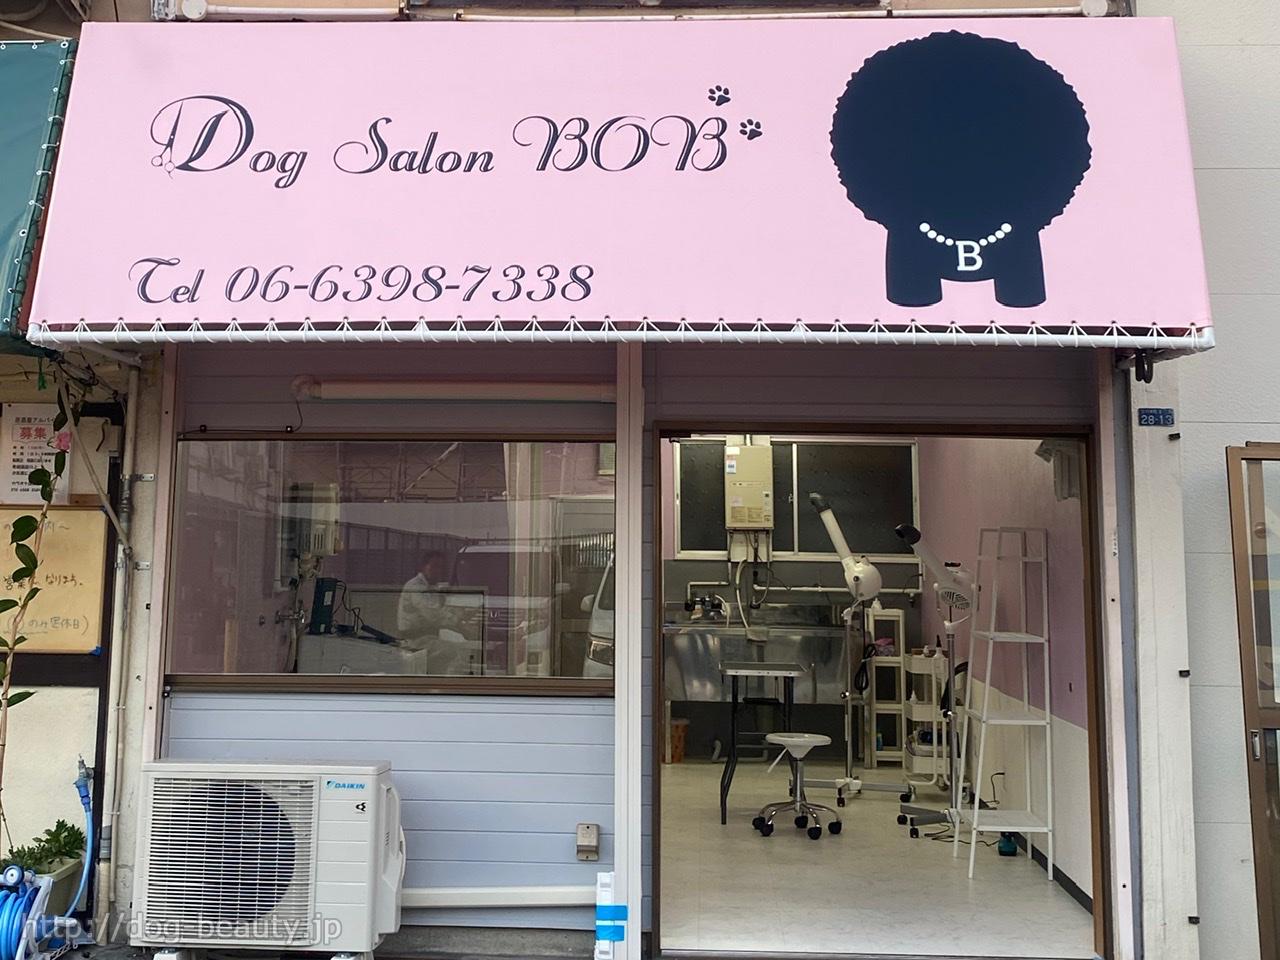 Dog Salon BOB